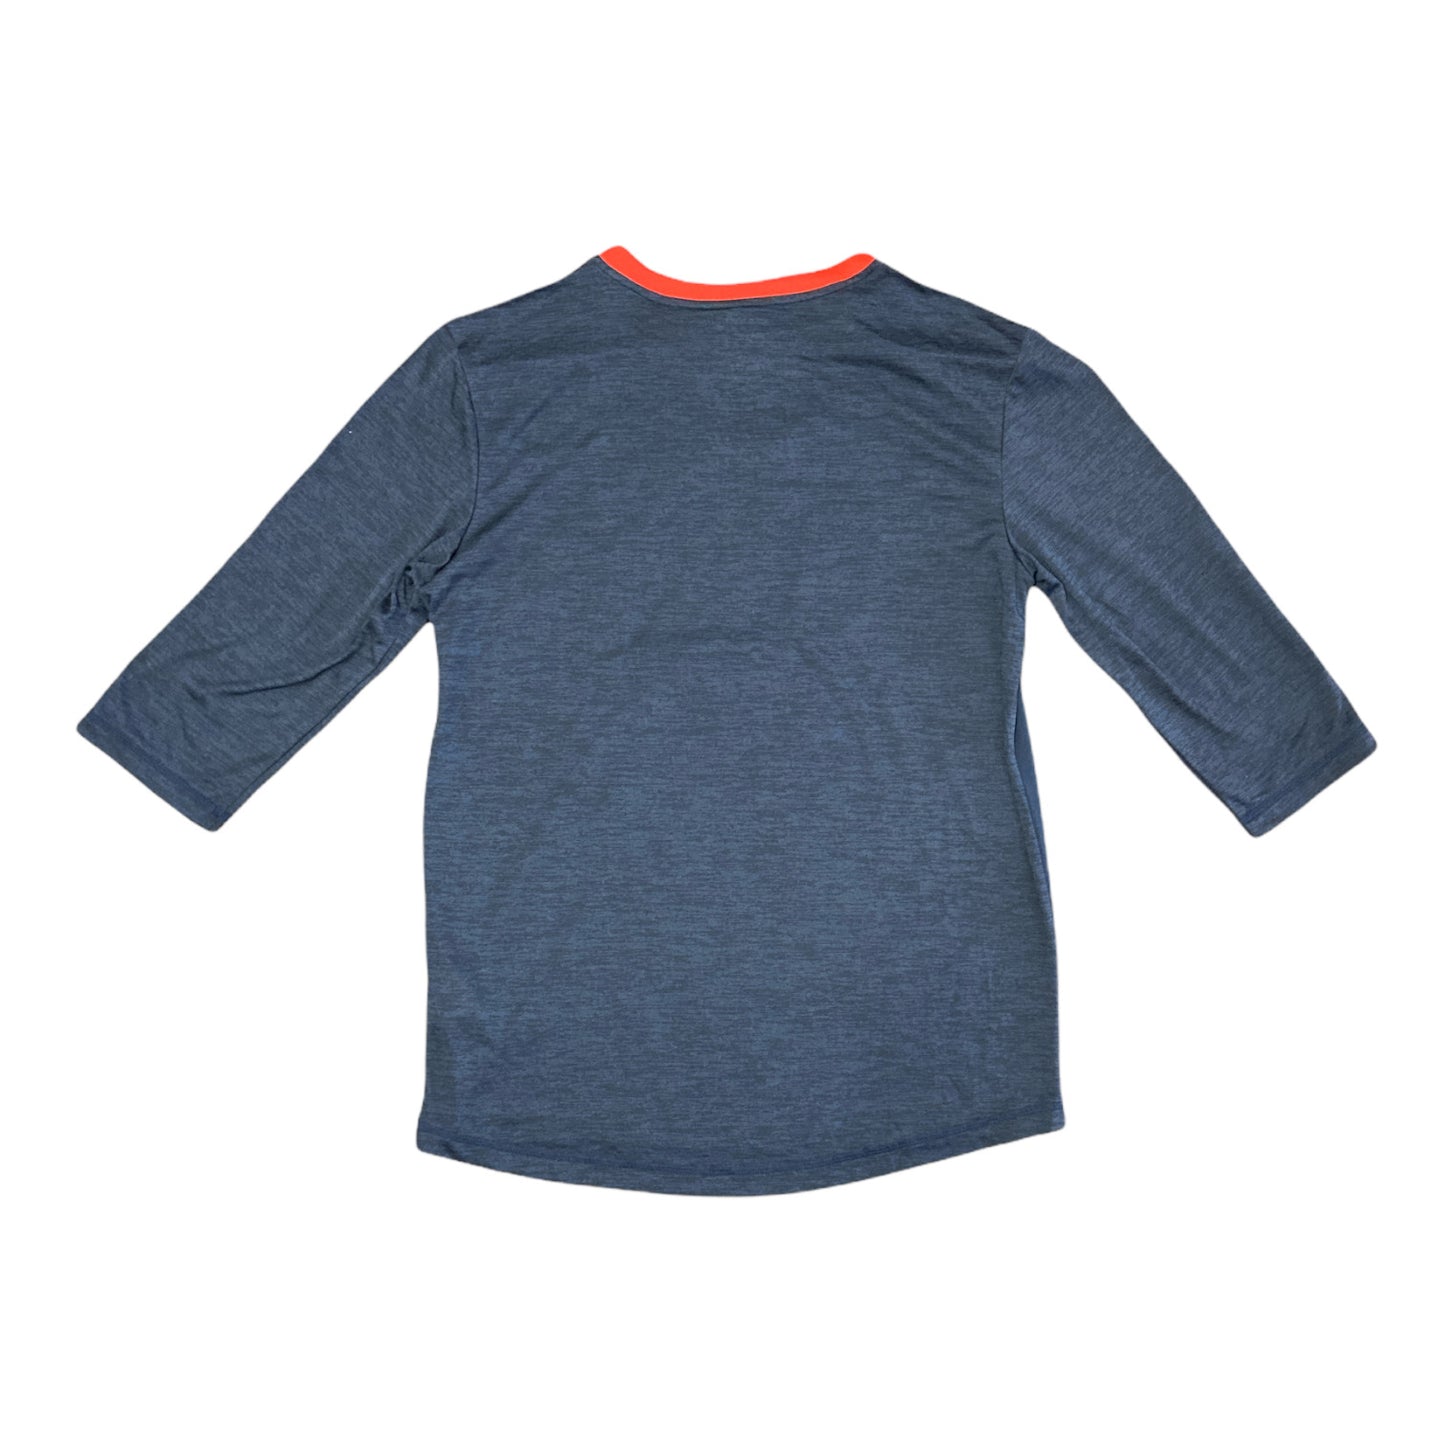 Atlanta Braves Blue/Red Raglan Sleeves Mens Tshirt Size XL